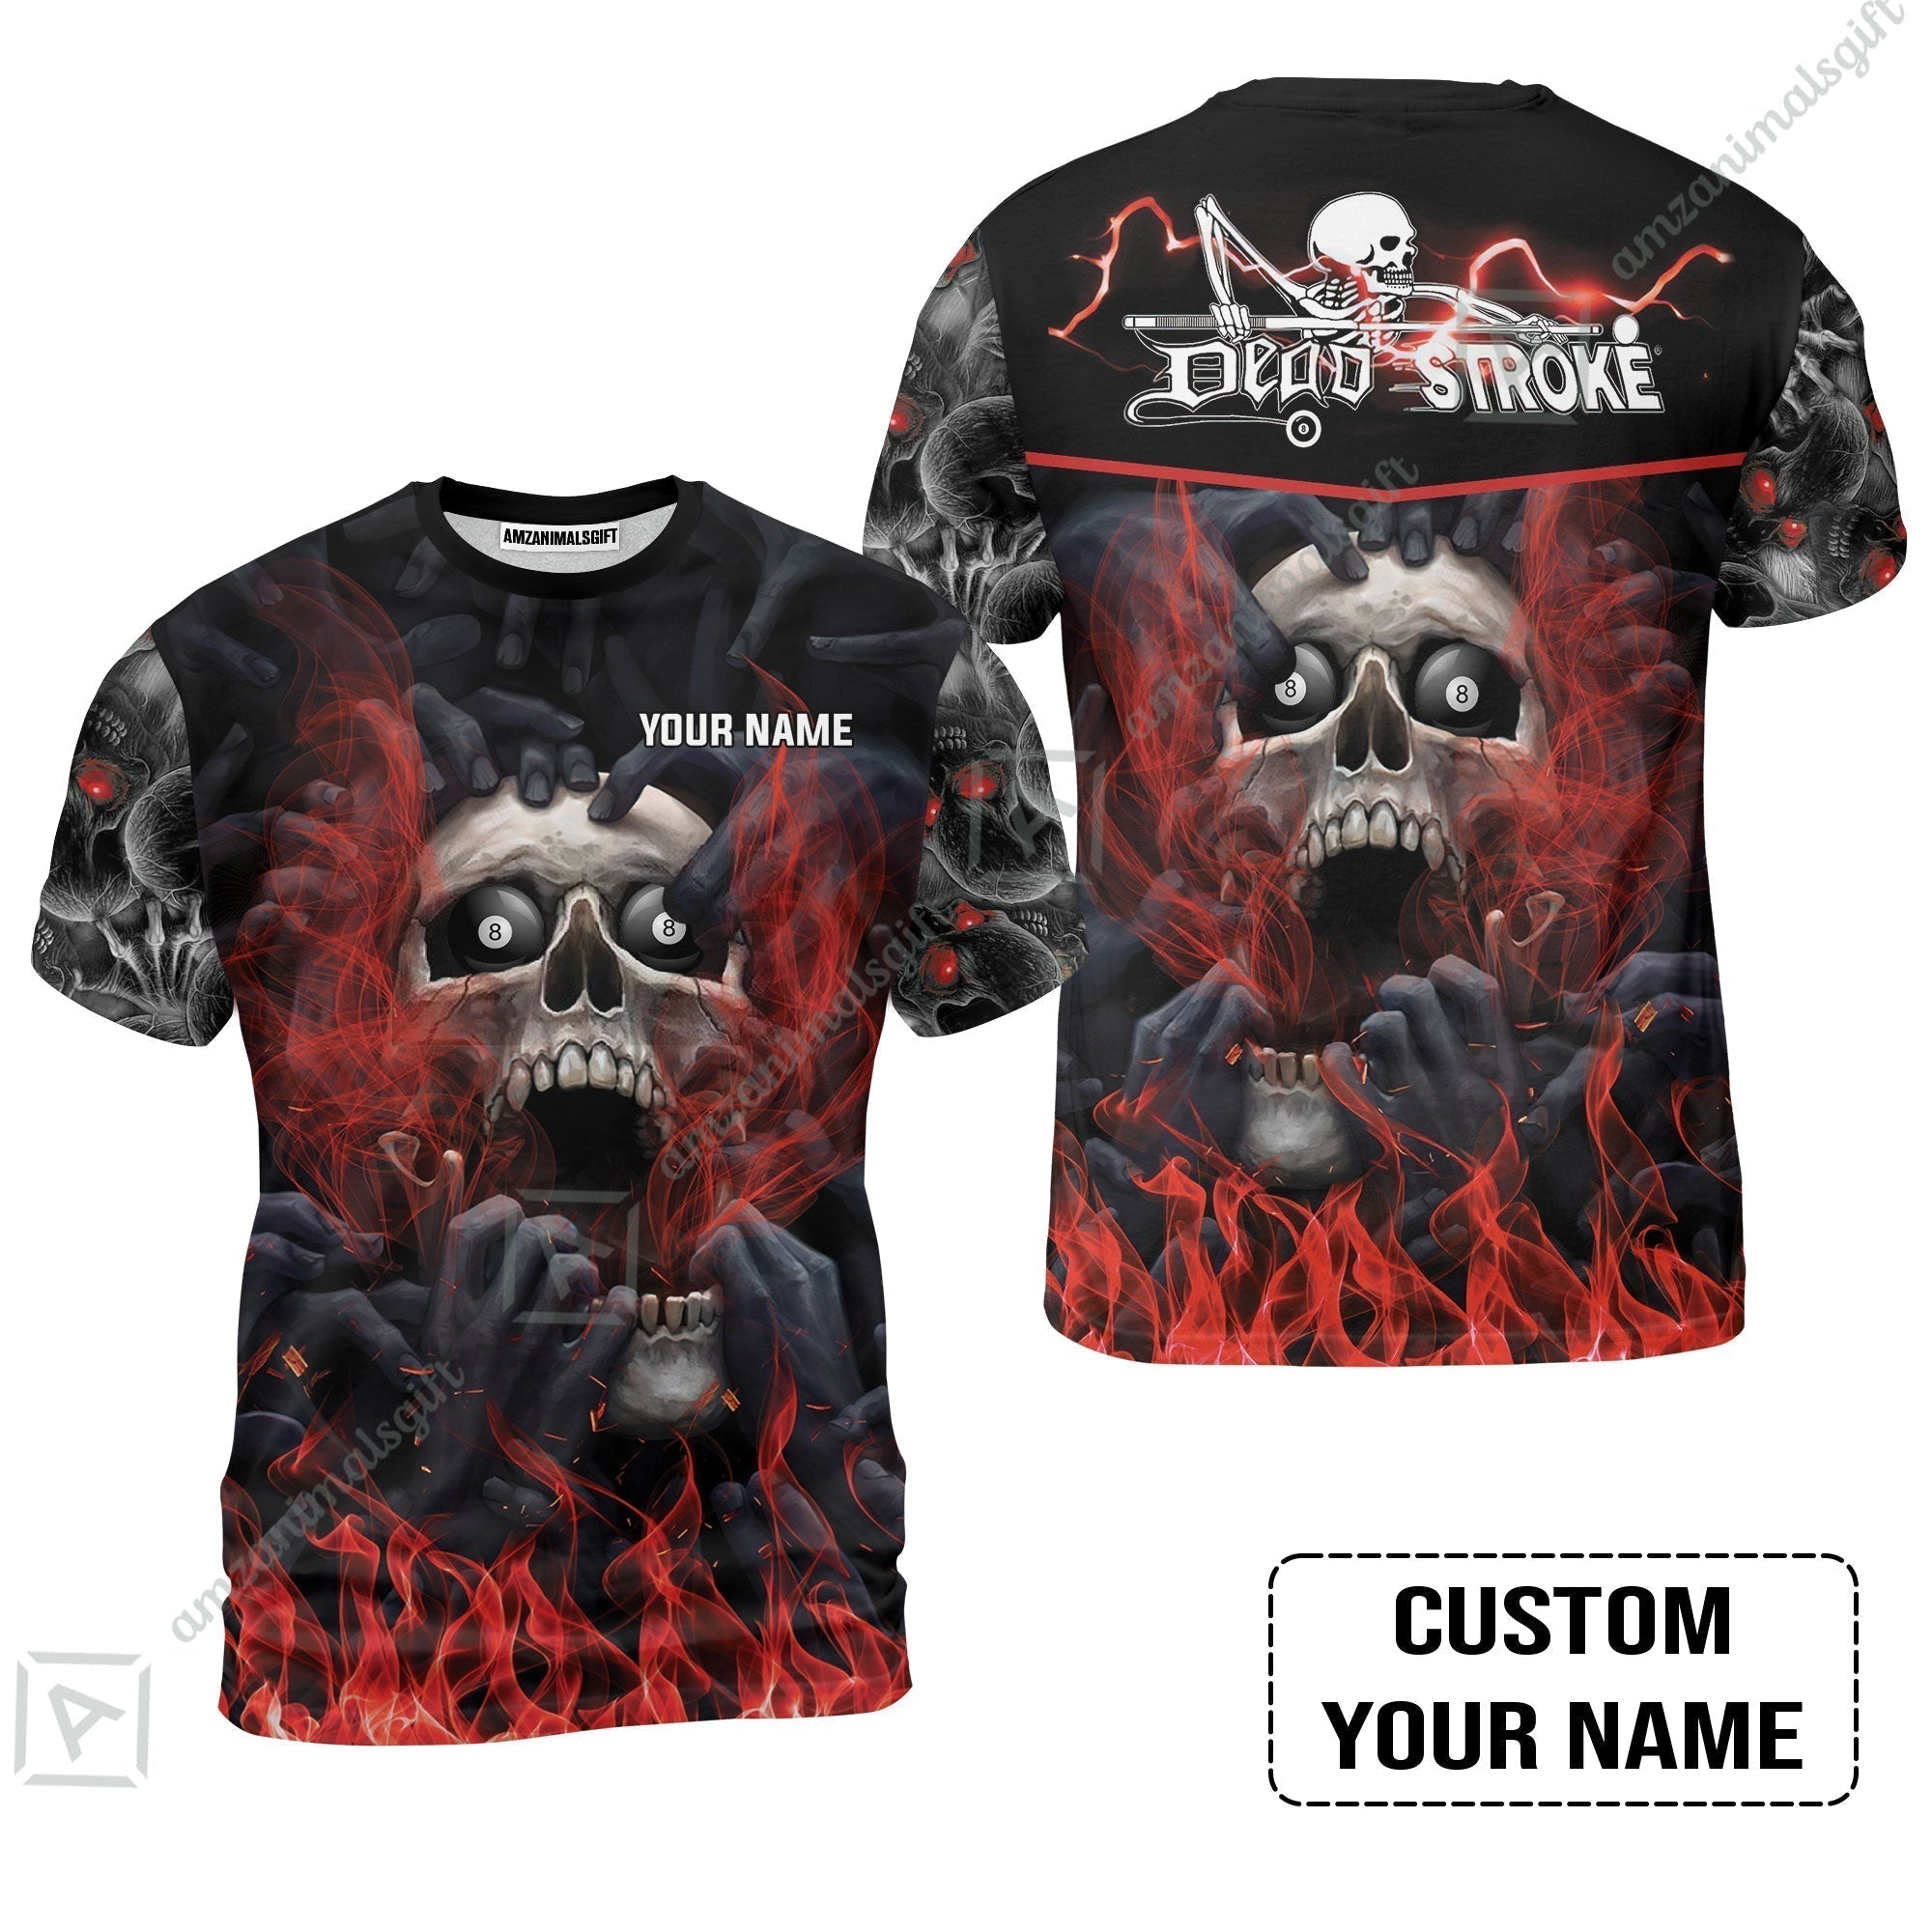 Custom Billiard T-Shirt - Dead Stroke Pool 8 Ball Skull On Fire Personalized Name, Perfect Billiard T-Shirt